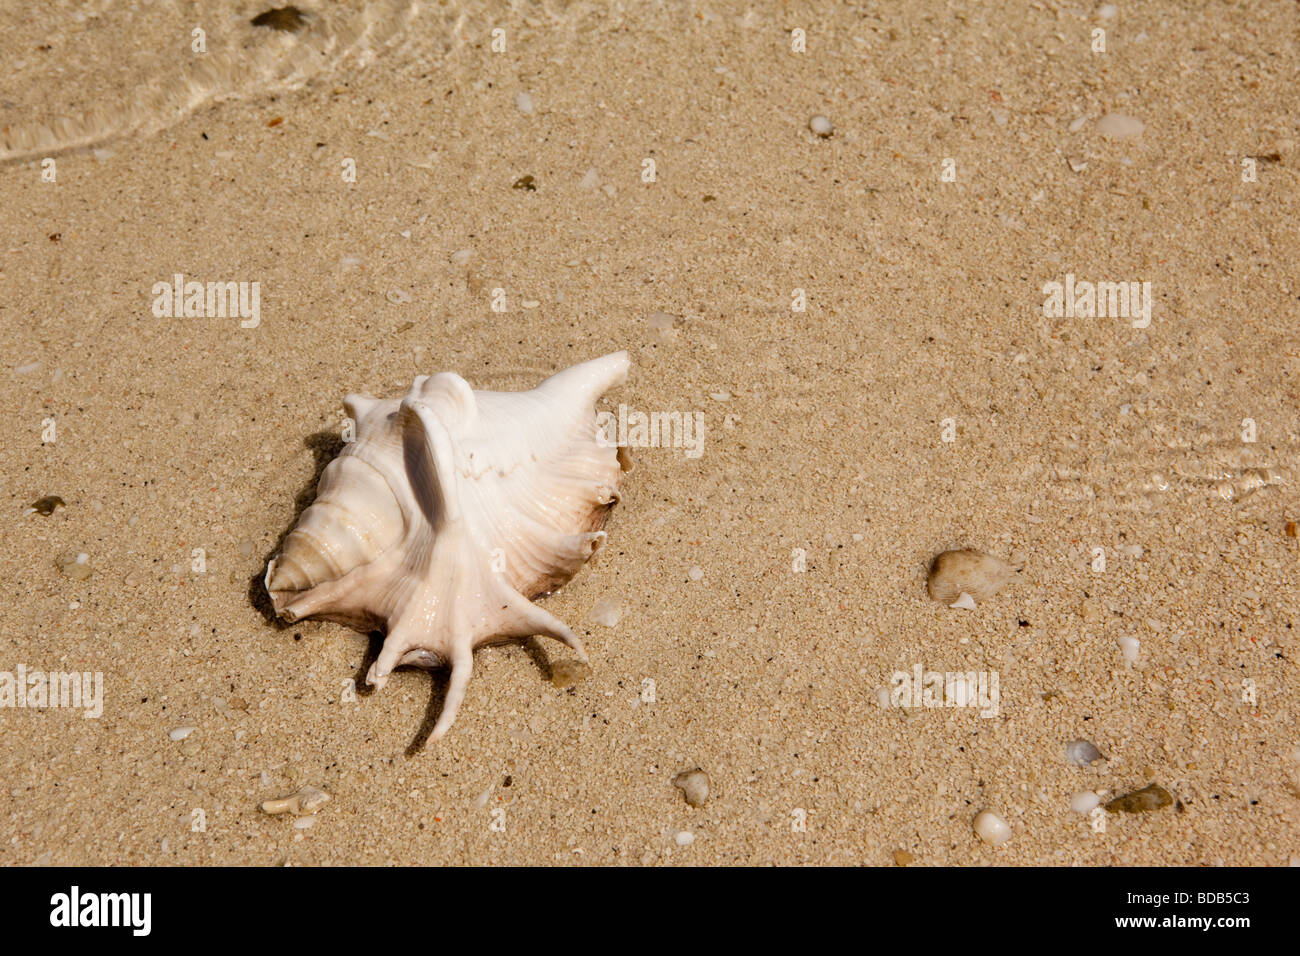 Indonesia Sulawesi Hoga Island single damaged sea shell washed up on sandy shore Stock Photo